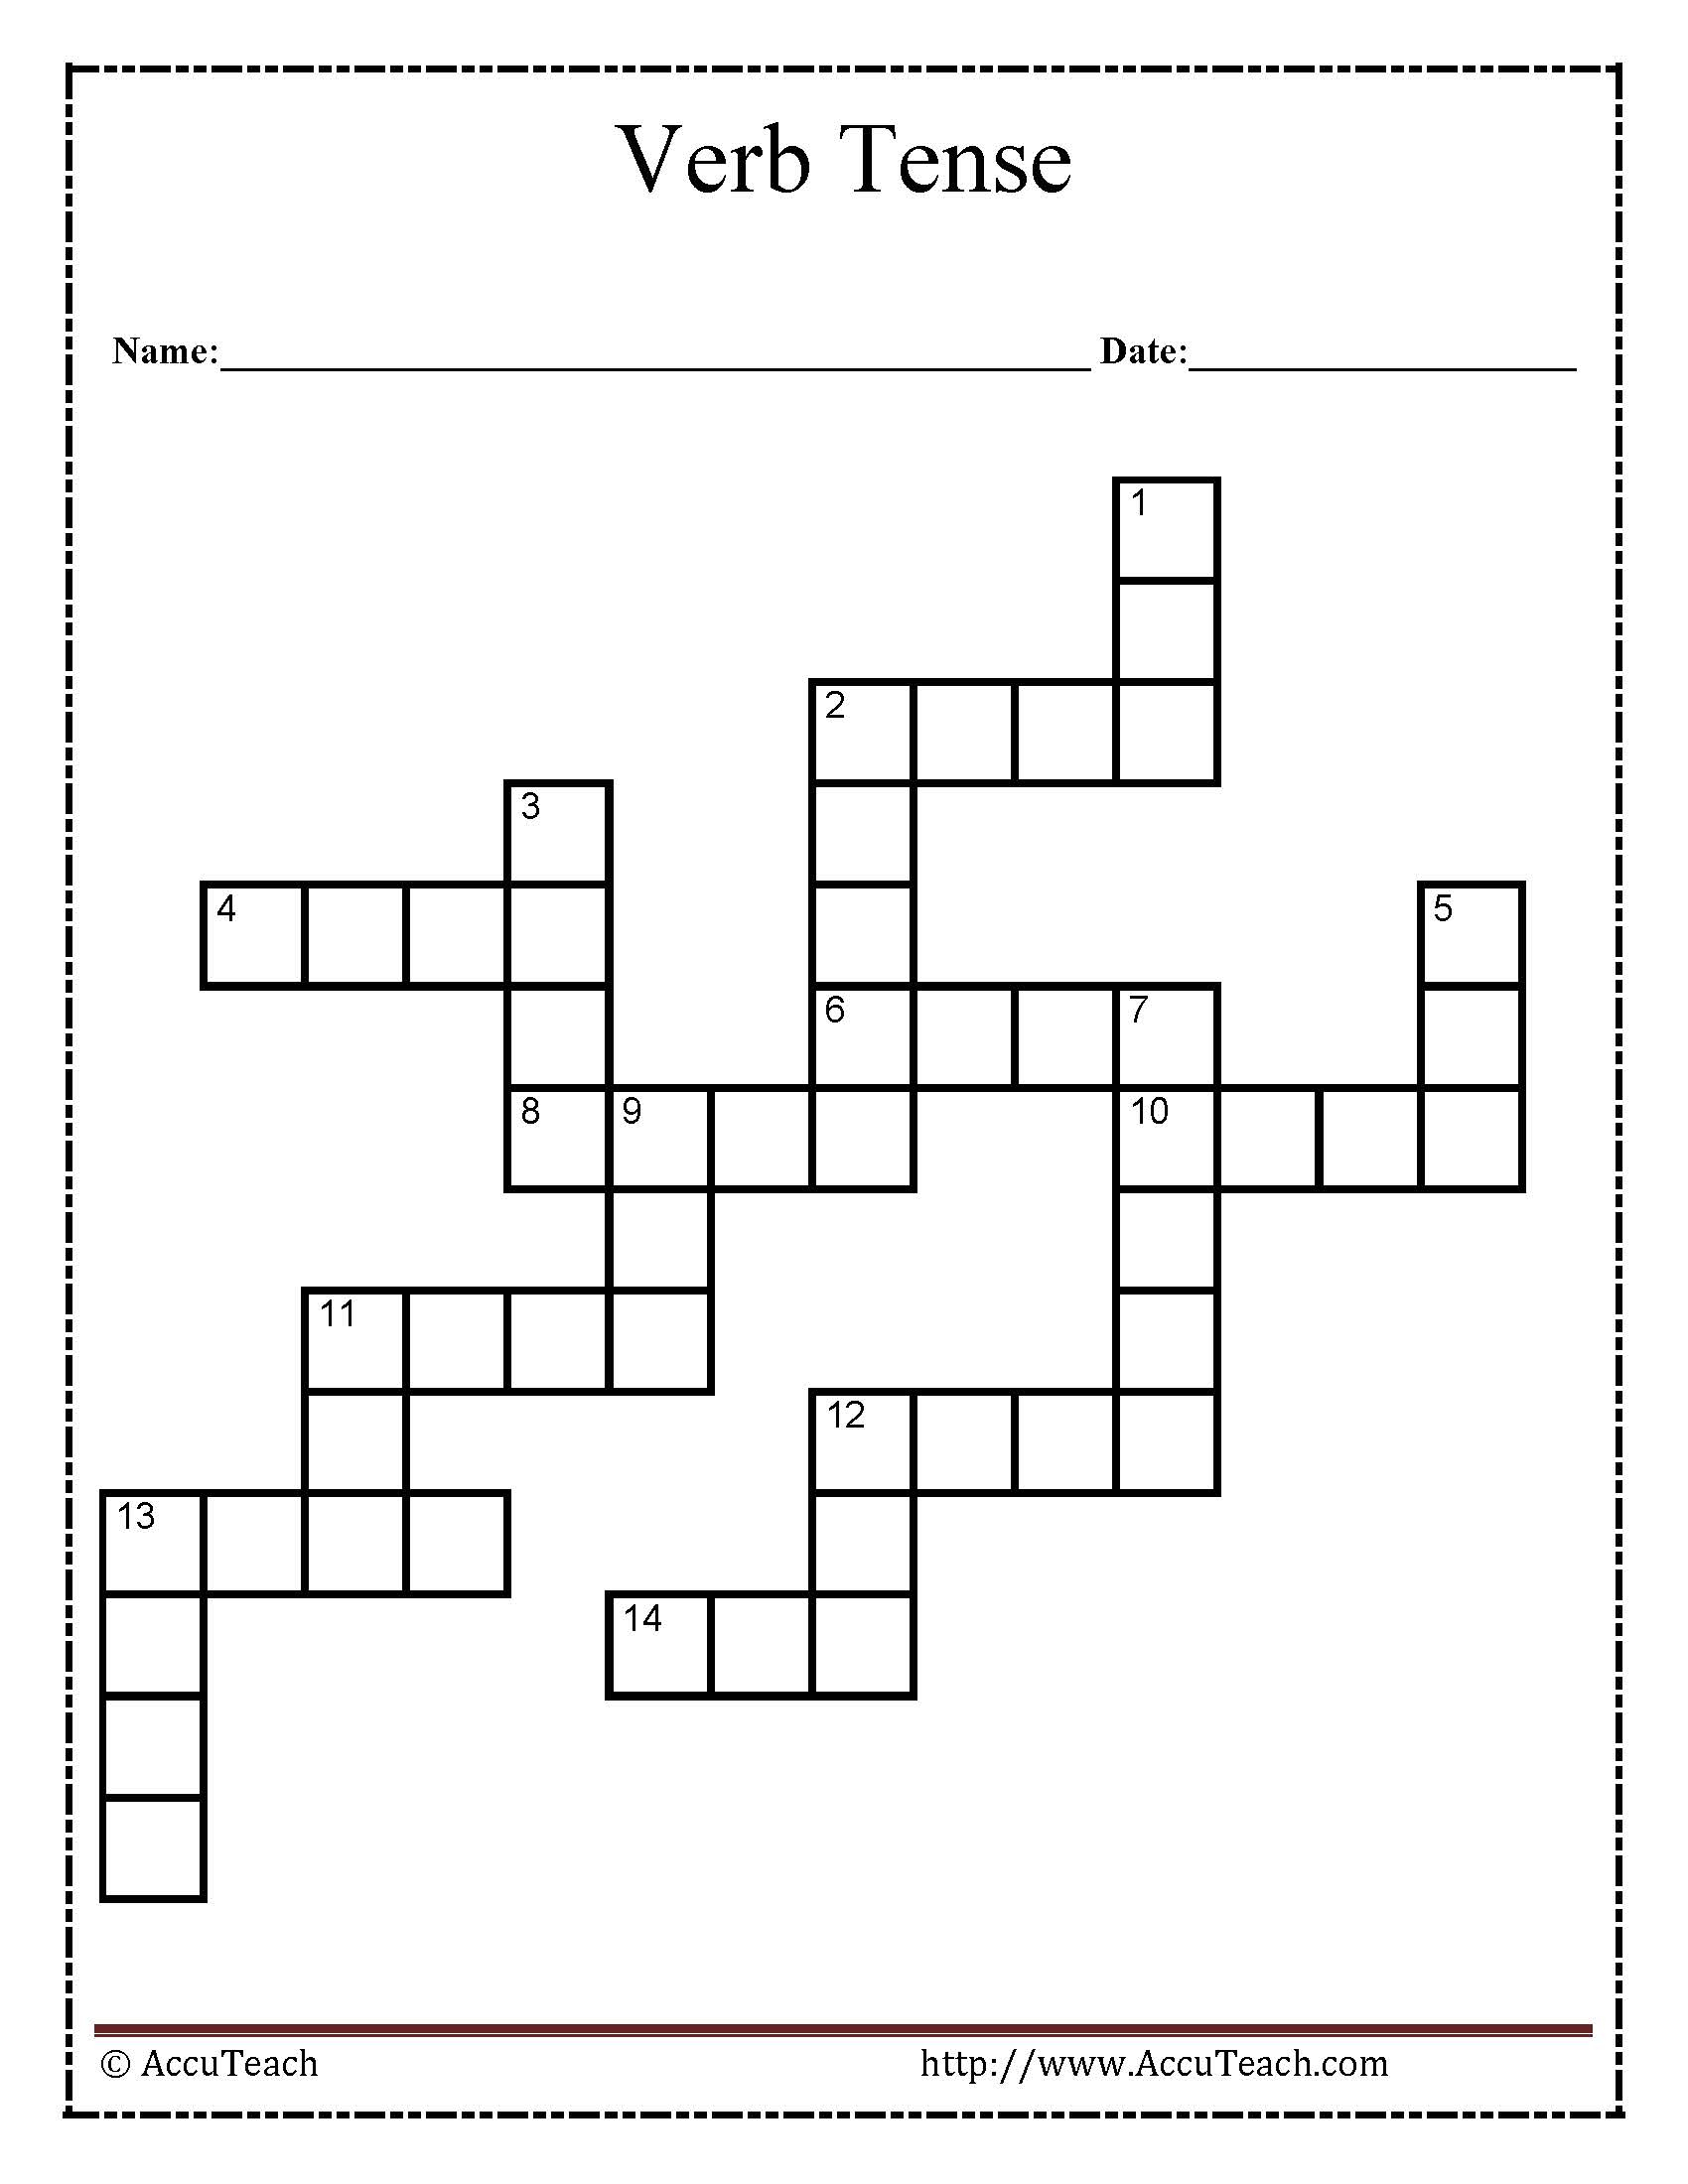 Verb Tense Crossword Puzzle Worksheet - Verbs Crossword Puzzle Printable